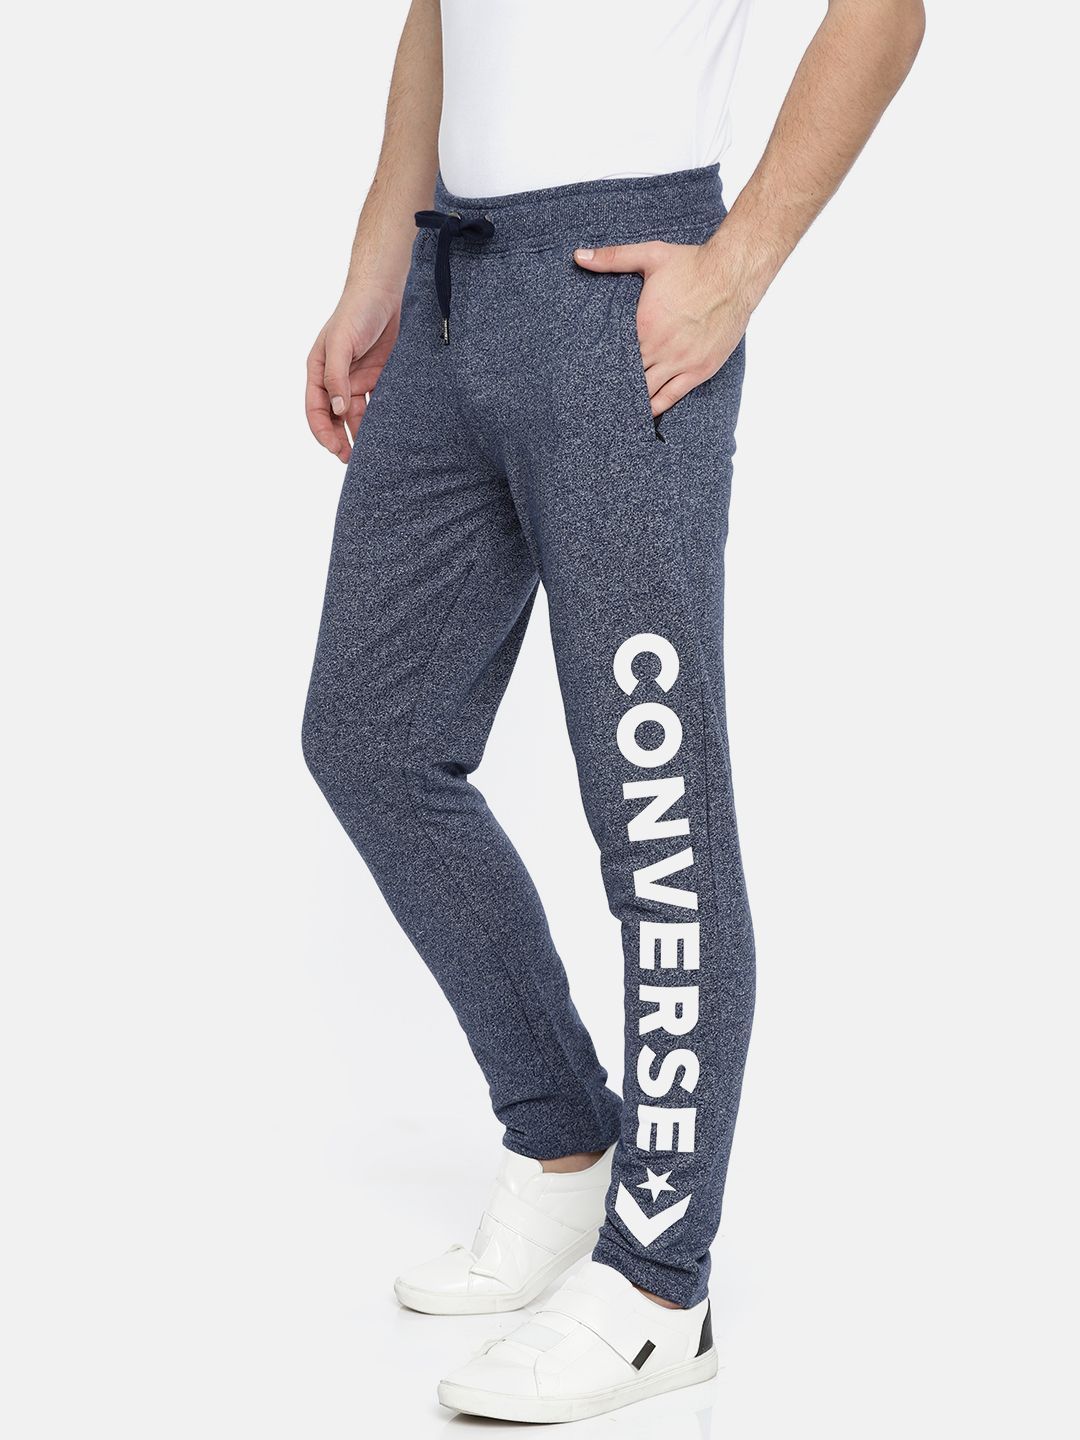 converse track pants mens